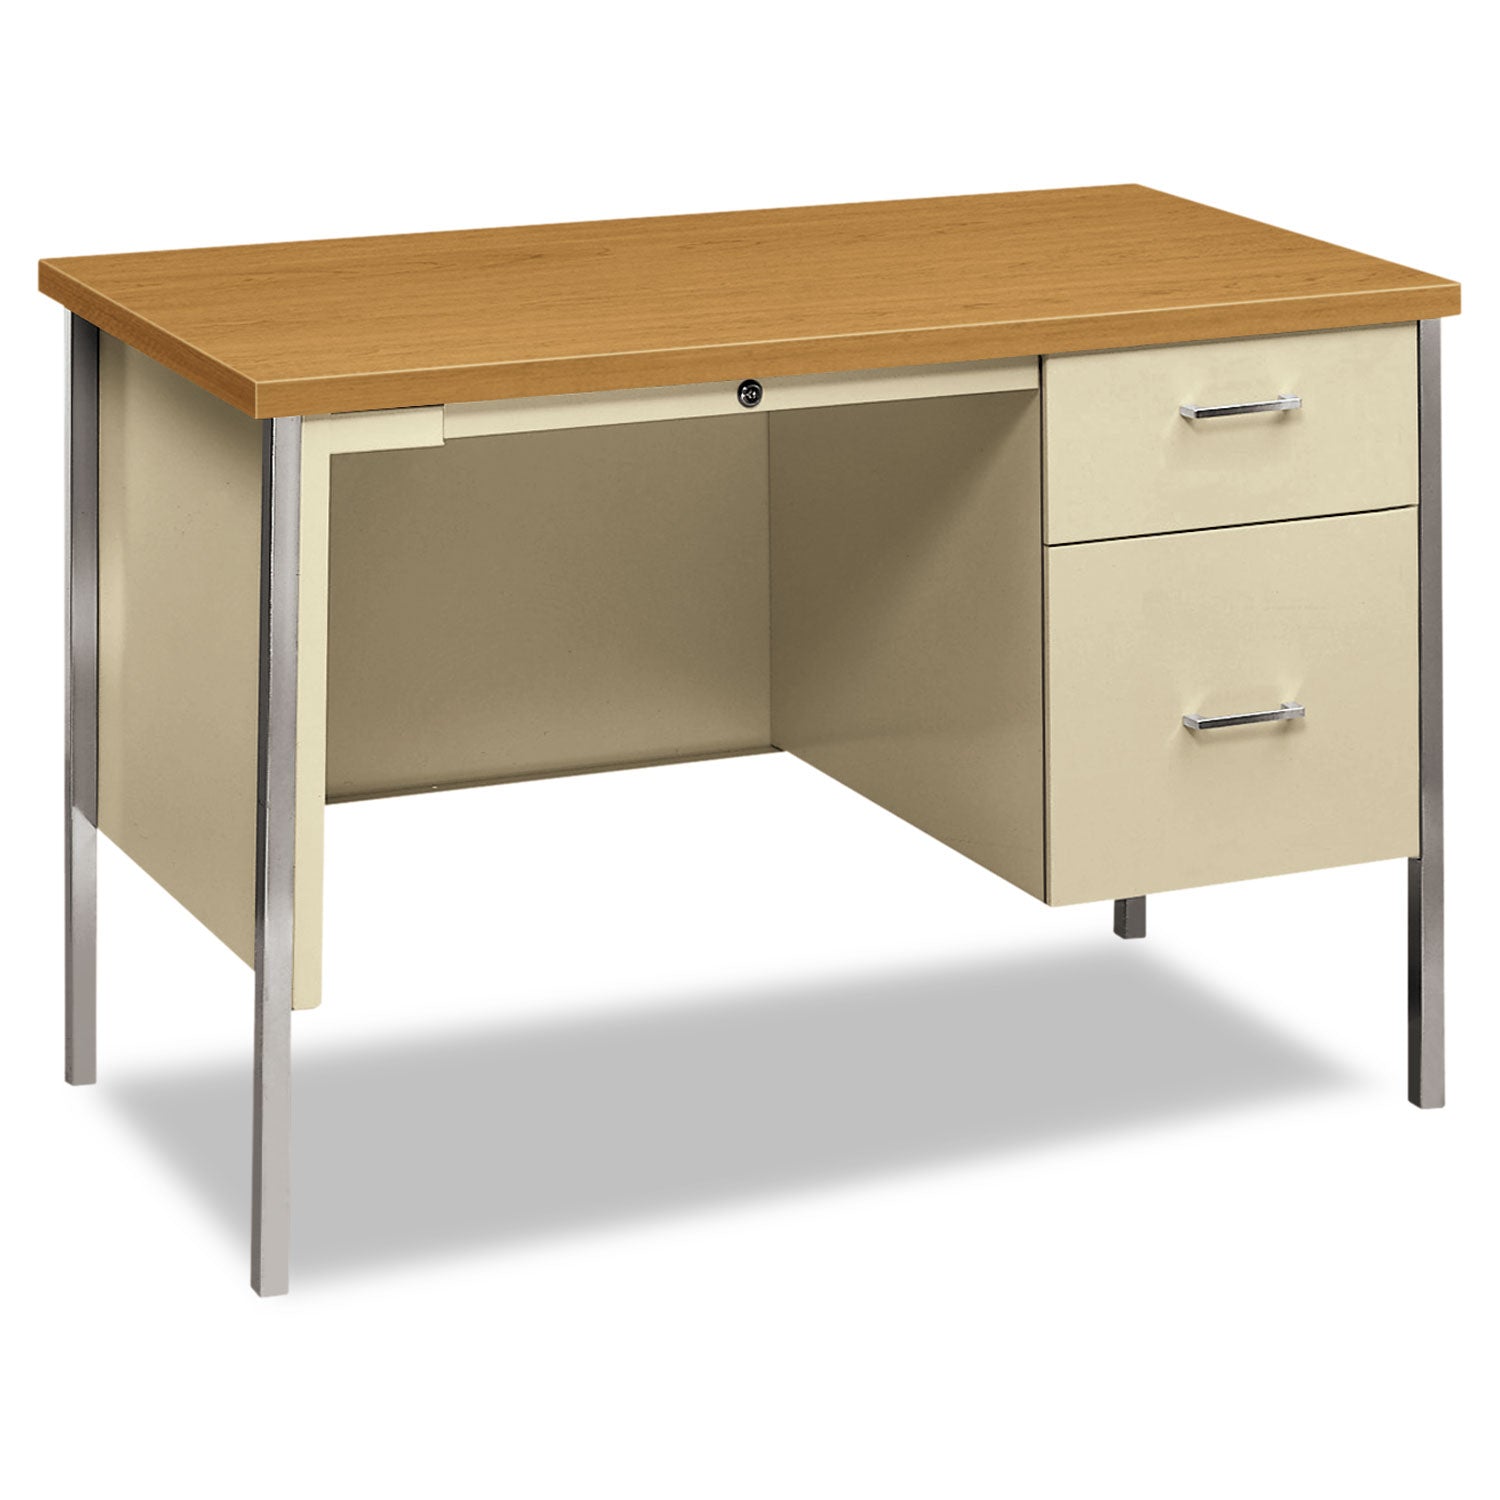 34000 Series Right Pedestal Desk, 45.25" x 24" x 29.5", Harvest/Putty - 